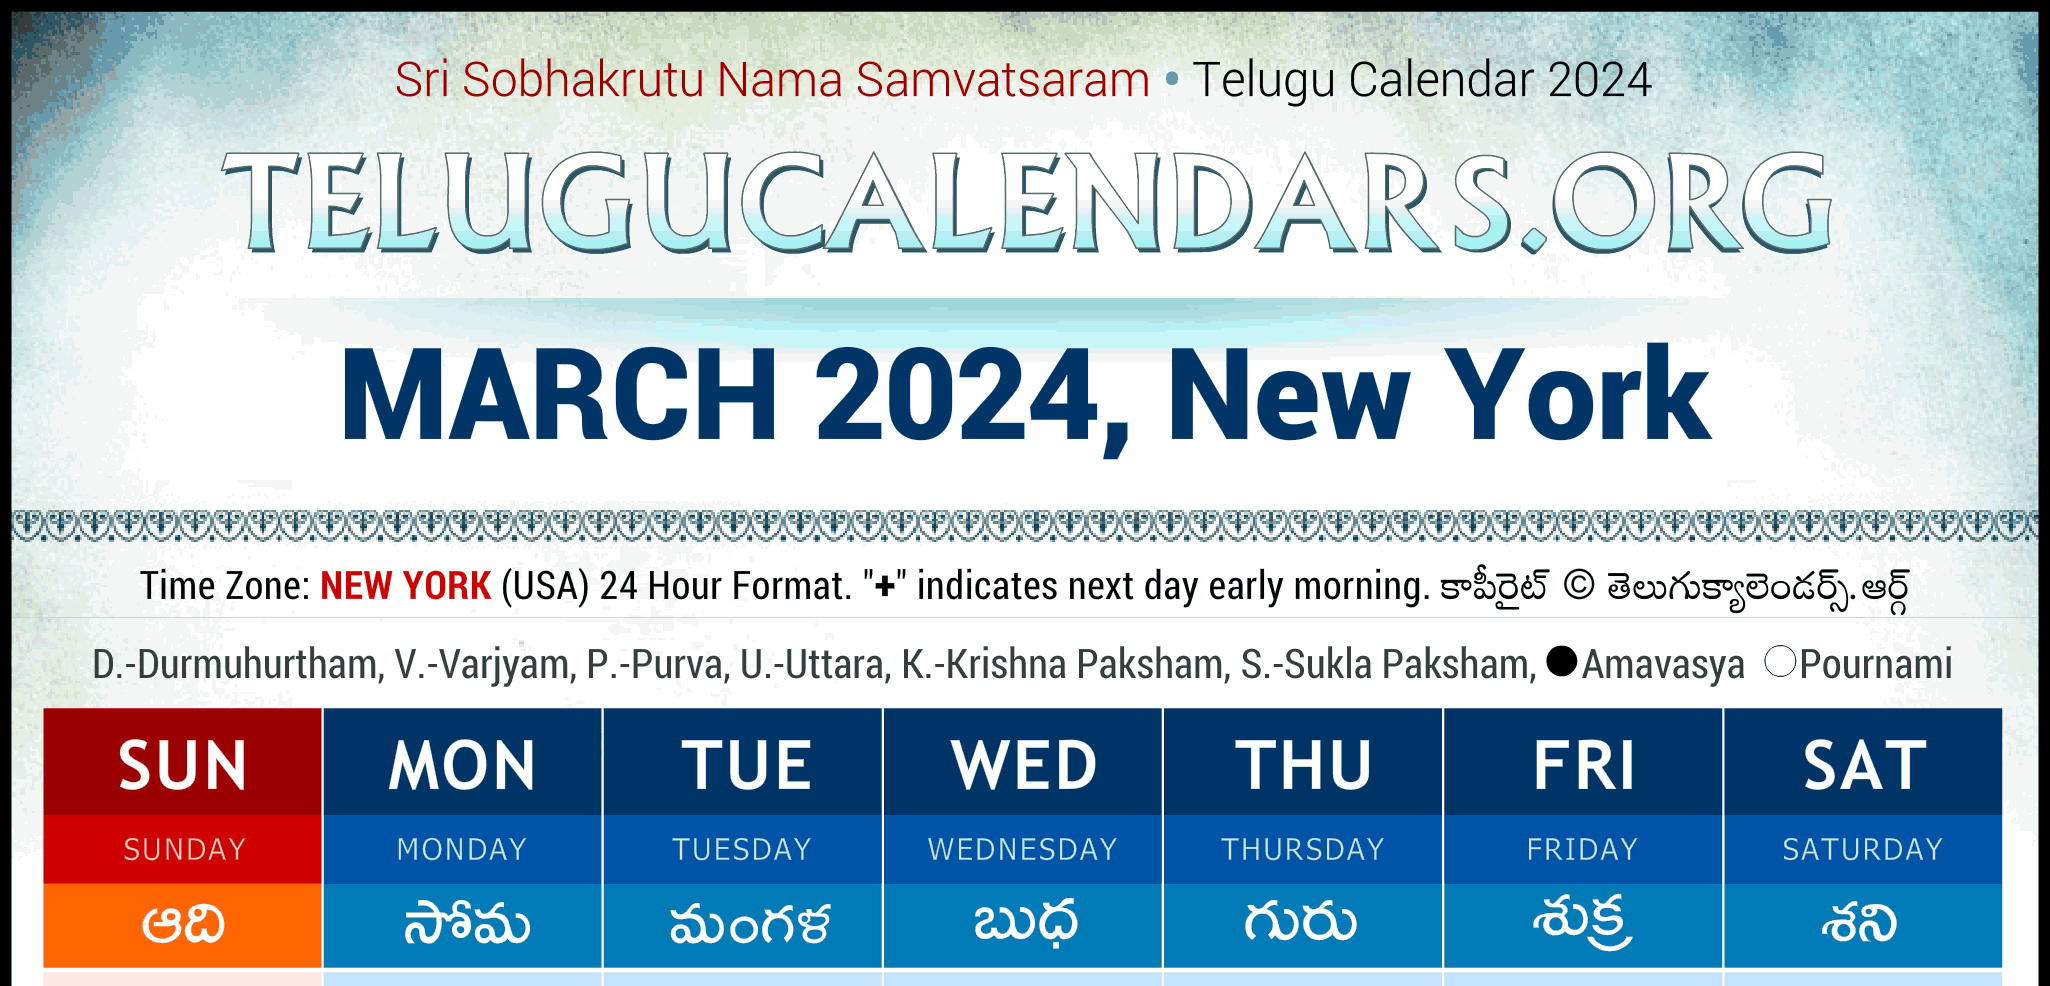 Telugu Calendar 2024 New York